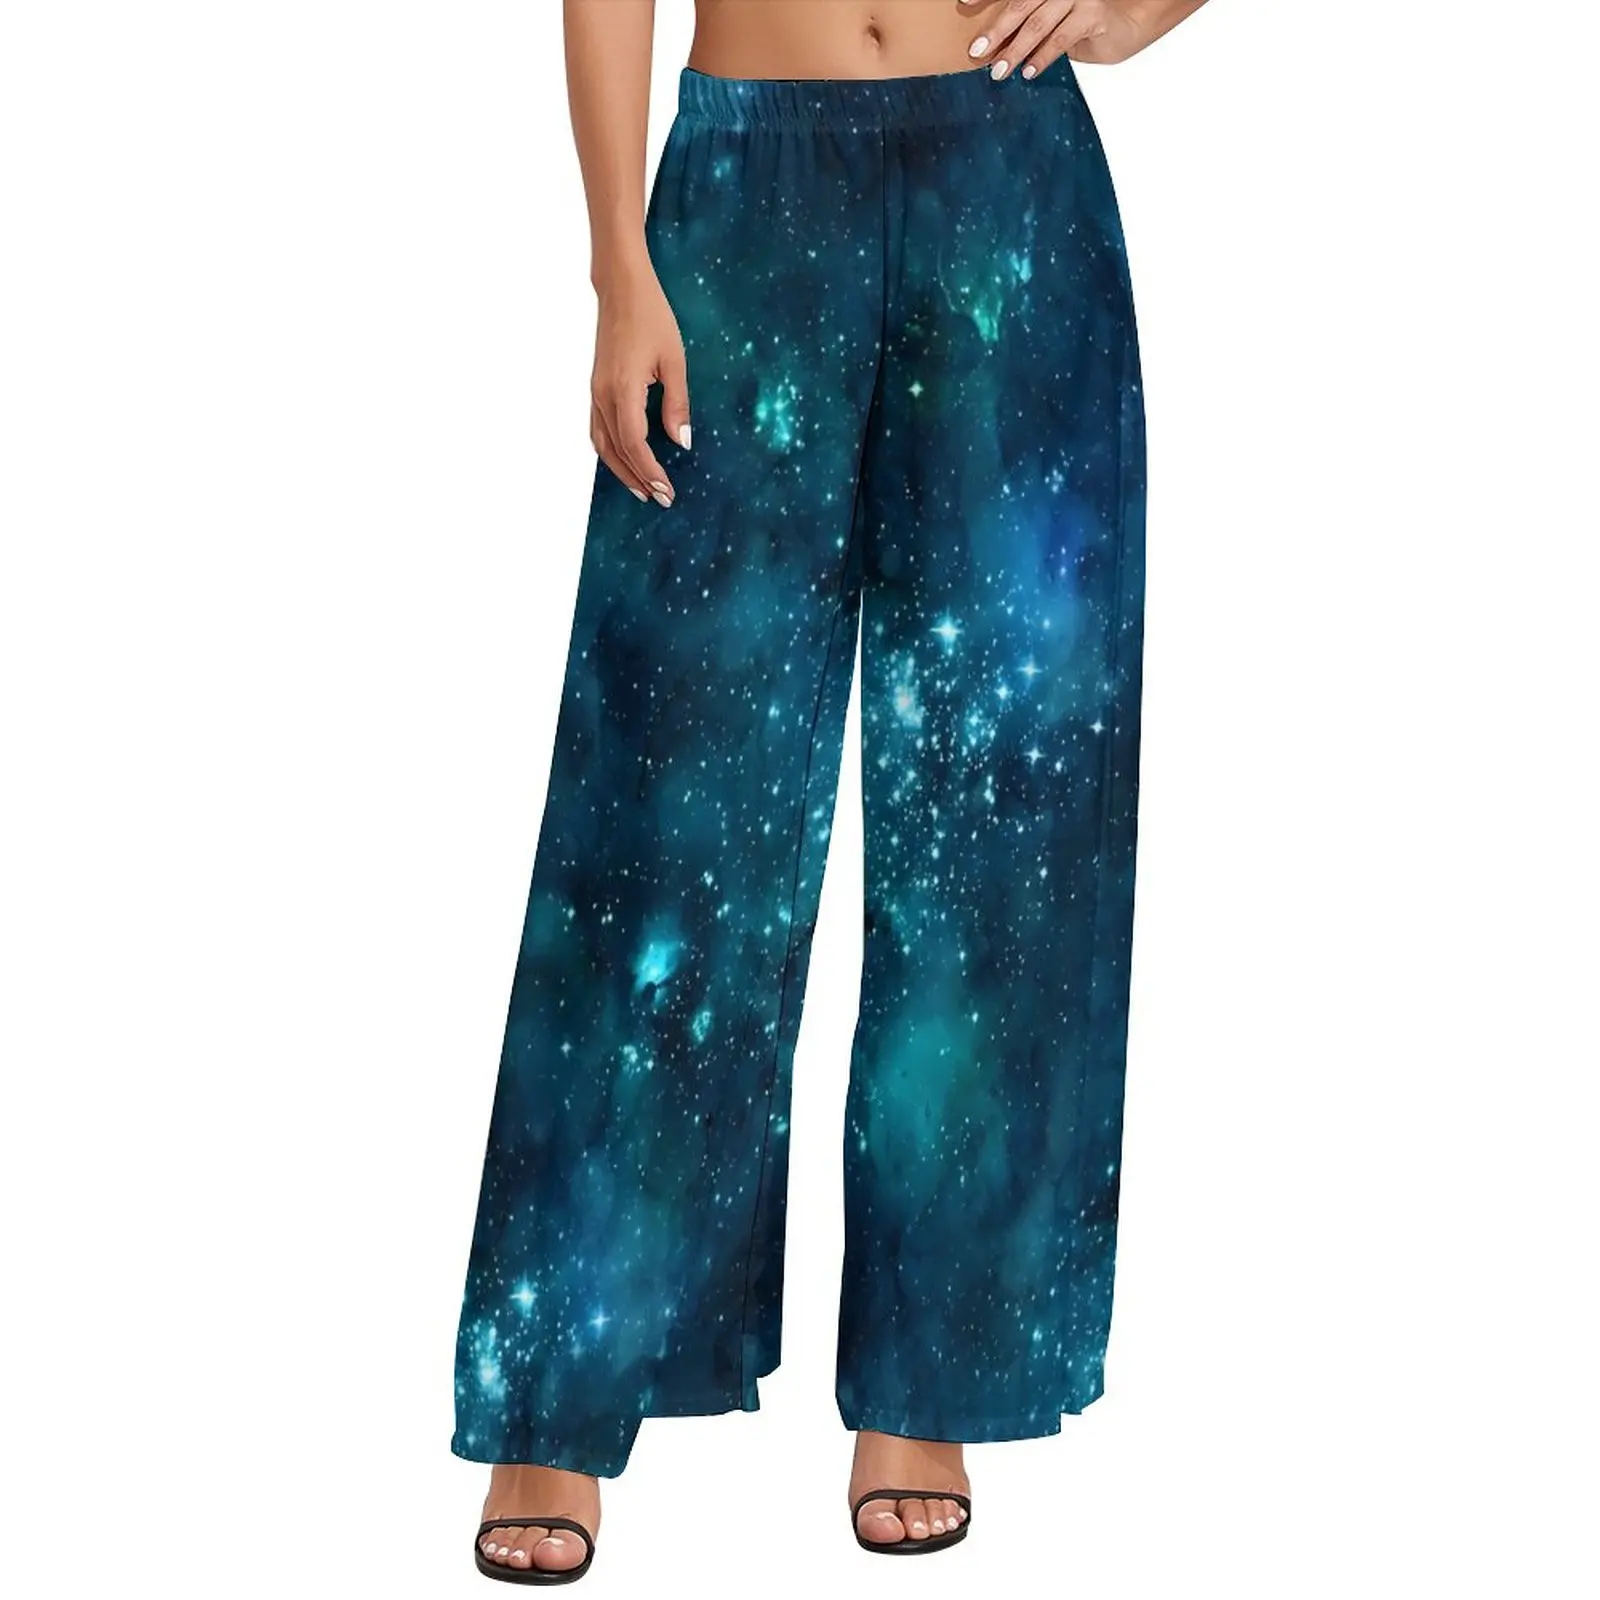 

Брюки астрономические с широкими штанинами, уличная одежда с космическим принтом, пикантные прямые брюки с эластичным завышенным поясом, большие размеры 4XL 5XL